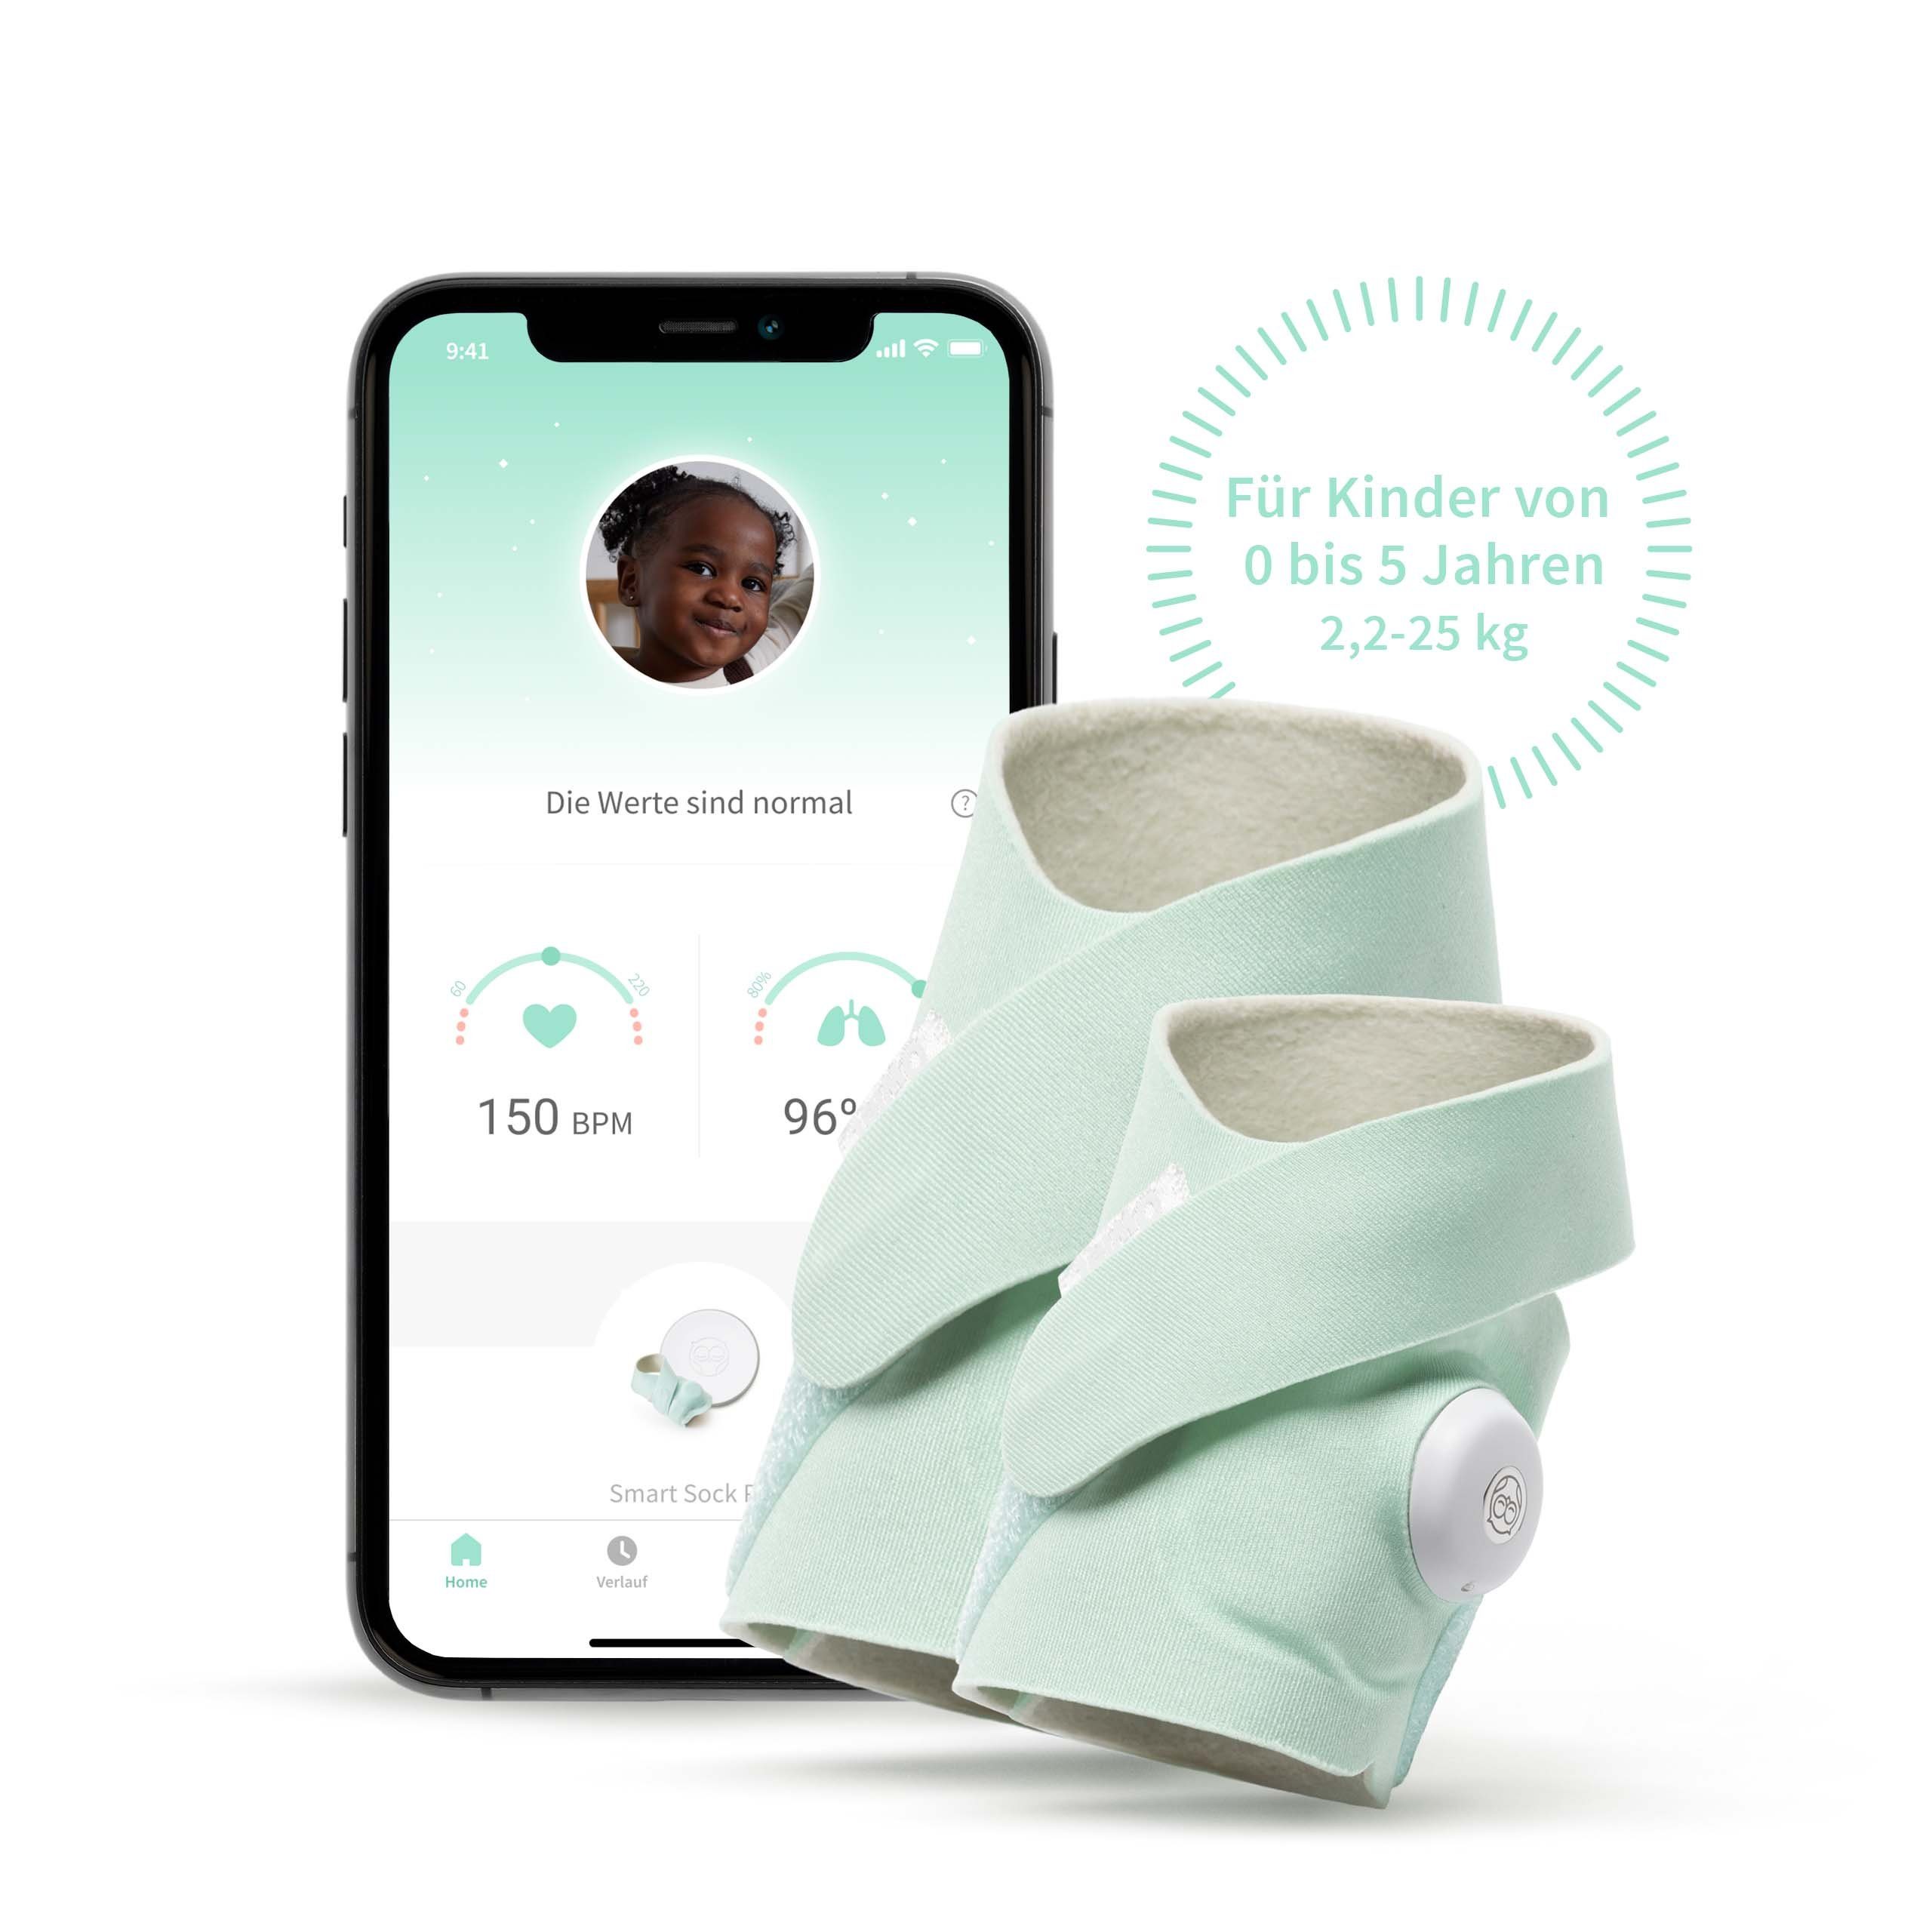 Babyphone, Smart - DE und Care Sock, Sock Baby Tiefseegrün 3 Owlet Smart Sauerstoffmessung Puls-